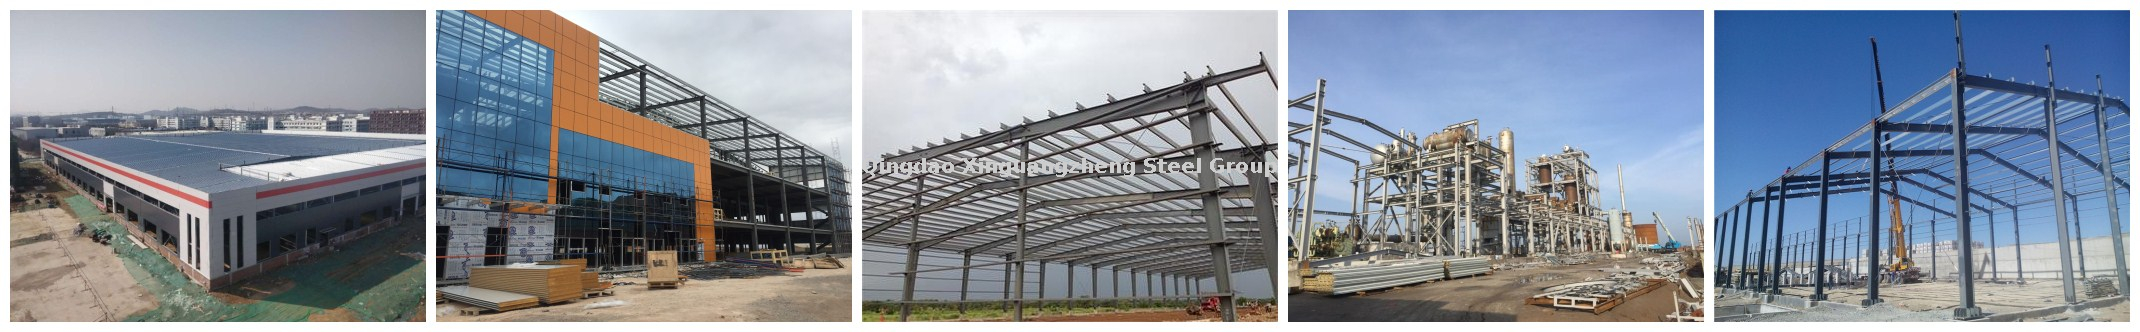 xinguangzheng steel structure